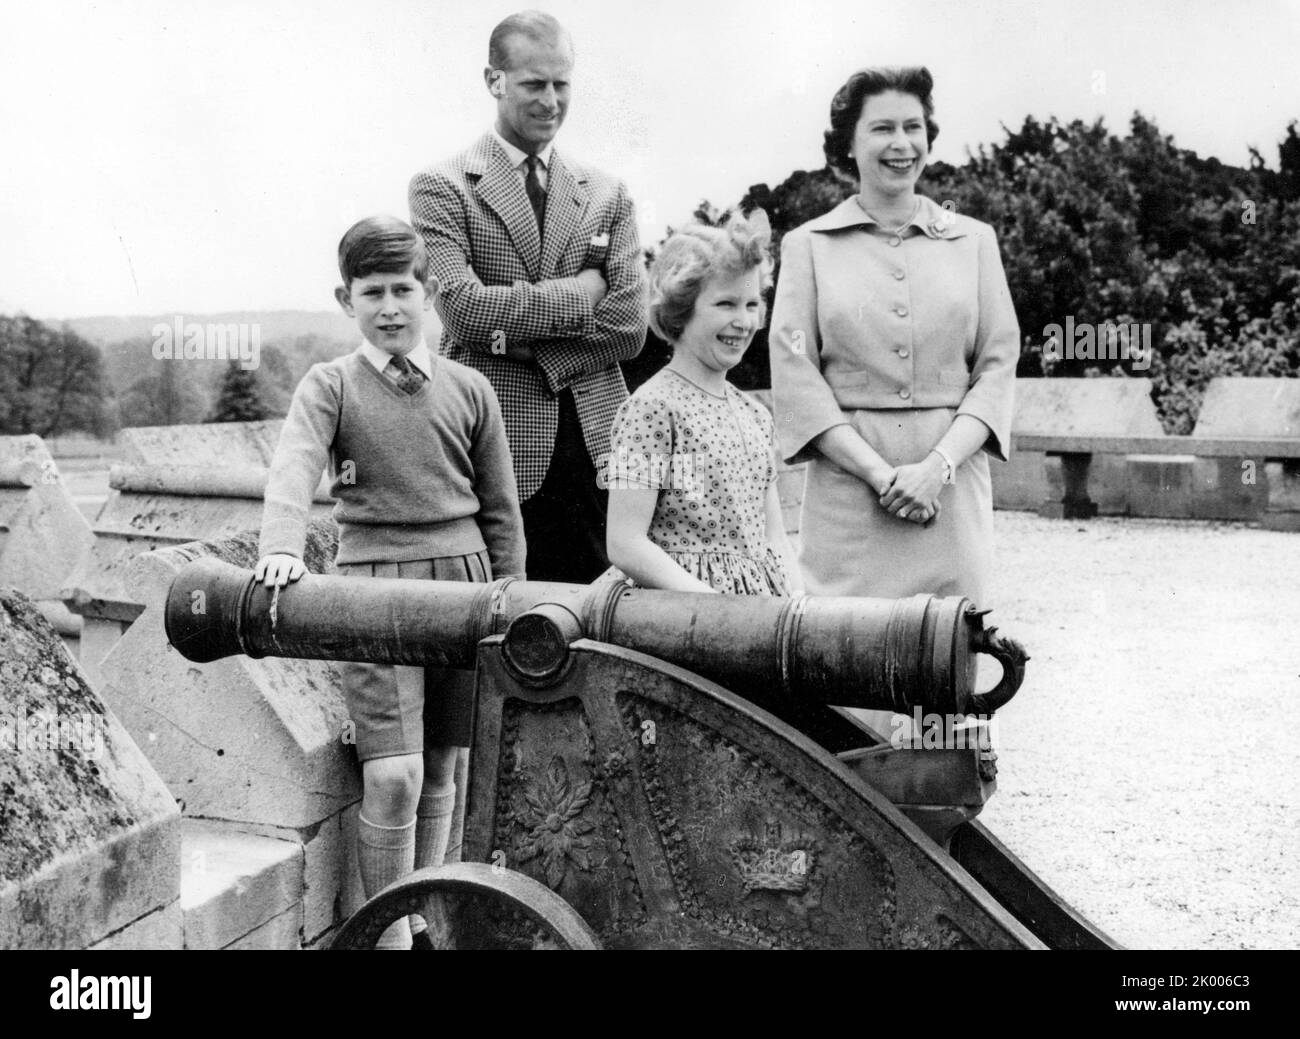 1 giugno 1959 - Windsor, Inghilterra, Regno Unito - figlia maggiore del re Giorgio VI e della regina Elisabetta, ELIZABETH WINDSOR (chiamata Elisabetta II) divenne regina all'età di 25 anni, e regnò attraverso più di cinque decenni di enormi cambiamenti sociali e di sviluppo. NELLA FOTO: REGINA ELISABETTA e PRINCIPE FILIPPO con i loro figli PRINCIPE CARLO e PRINCIPESSA ANNA. (Credit Image: © Keystone Press Agency/ZUMA Press Wire) Foto Stock